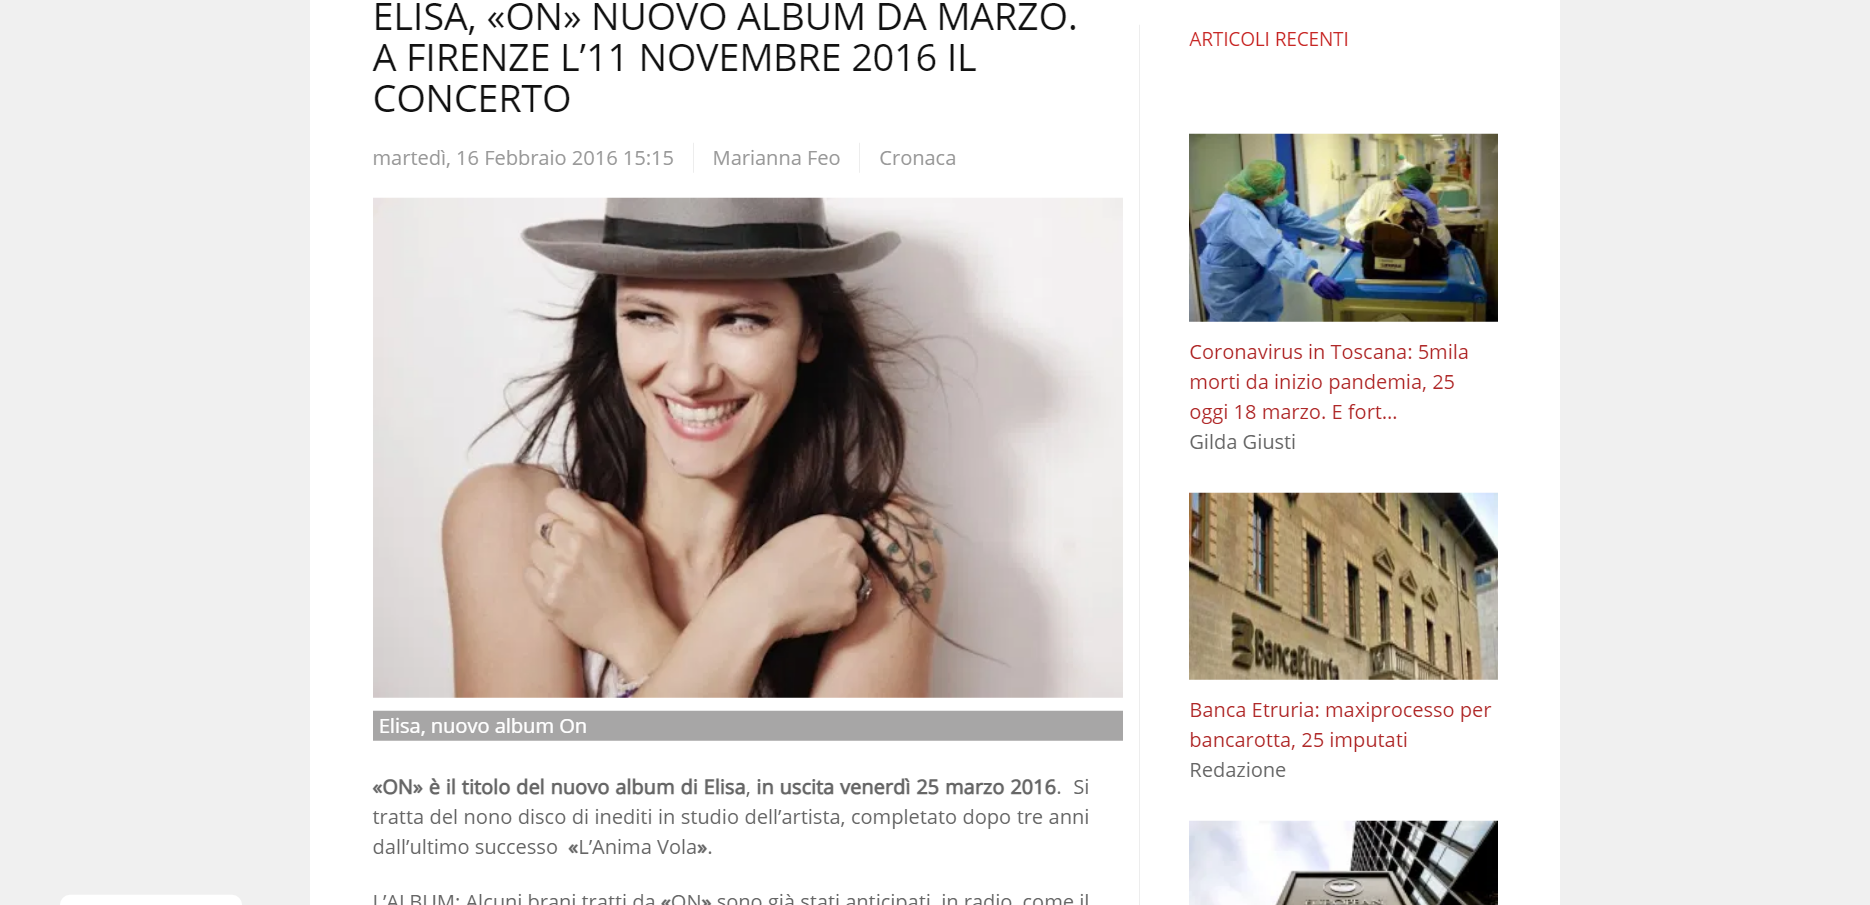 Firenzepost articolo musica Marianna Feo